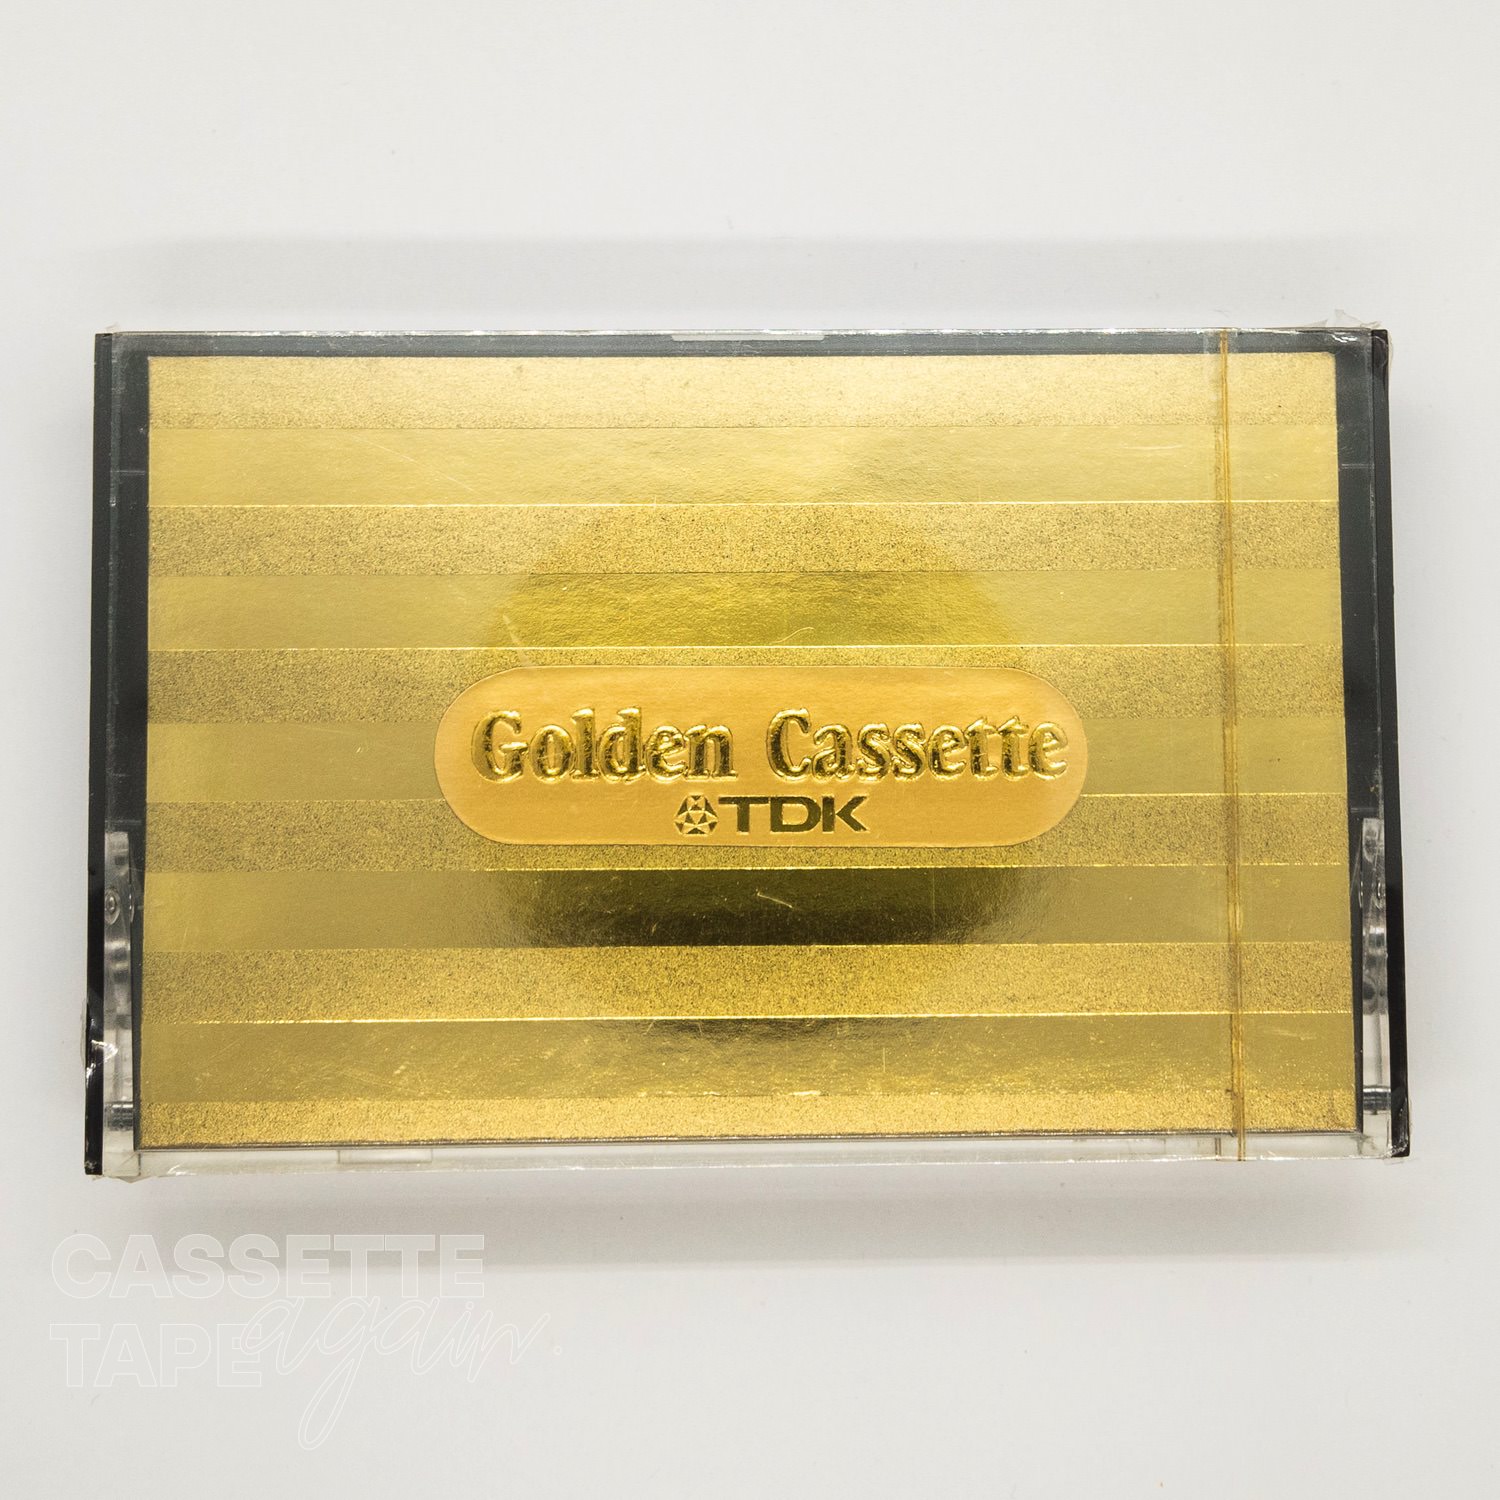 Golden Cassette 60 / TDK(ノーマル)